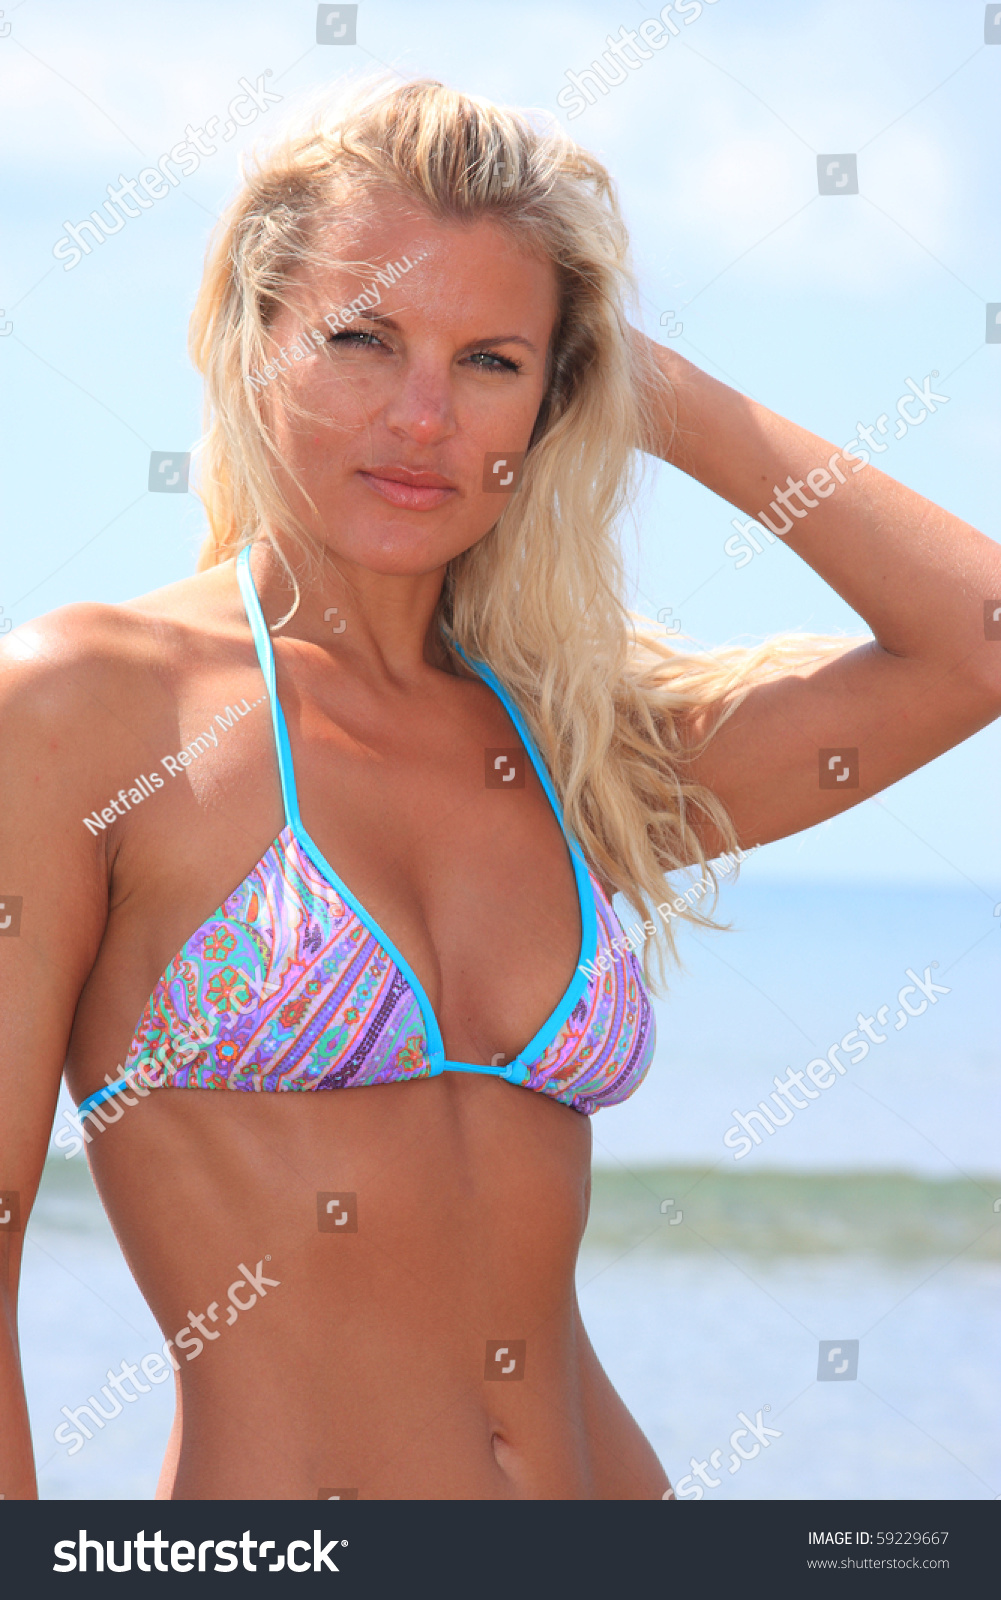 single russian girl in bikini hd pic